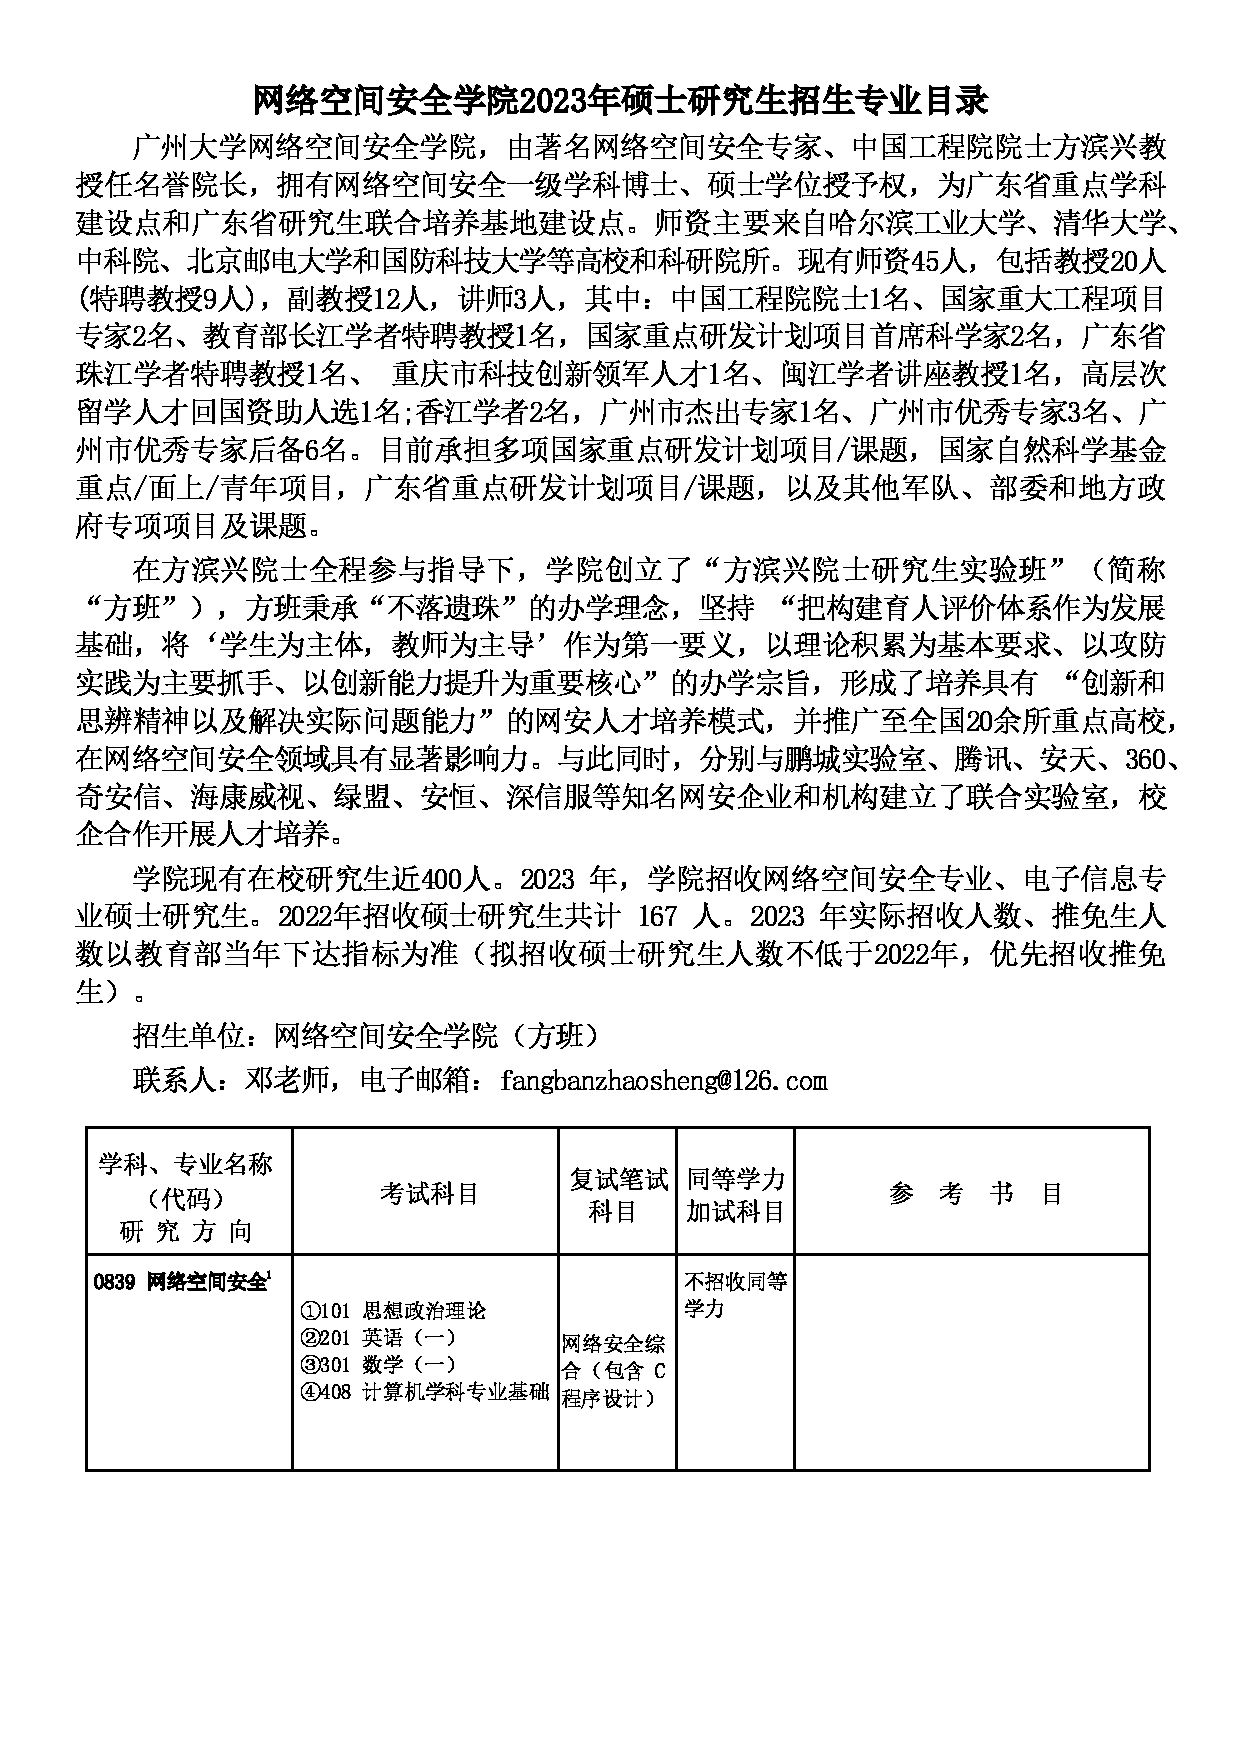 2023招生目录：广州大学2023年  24网络空间安全学院 研究生考试招生目录第1页